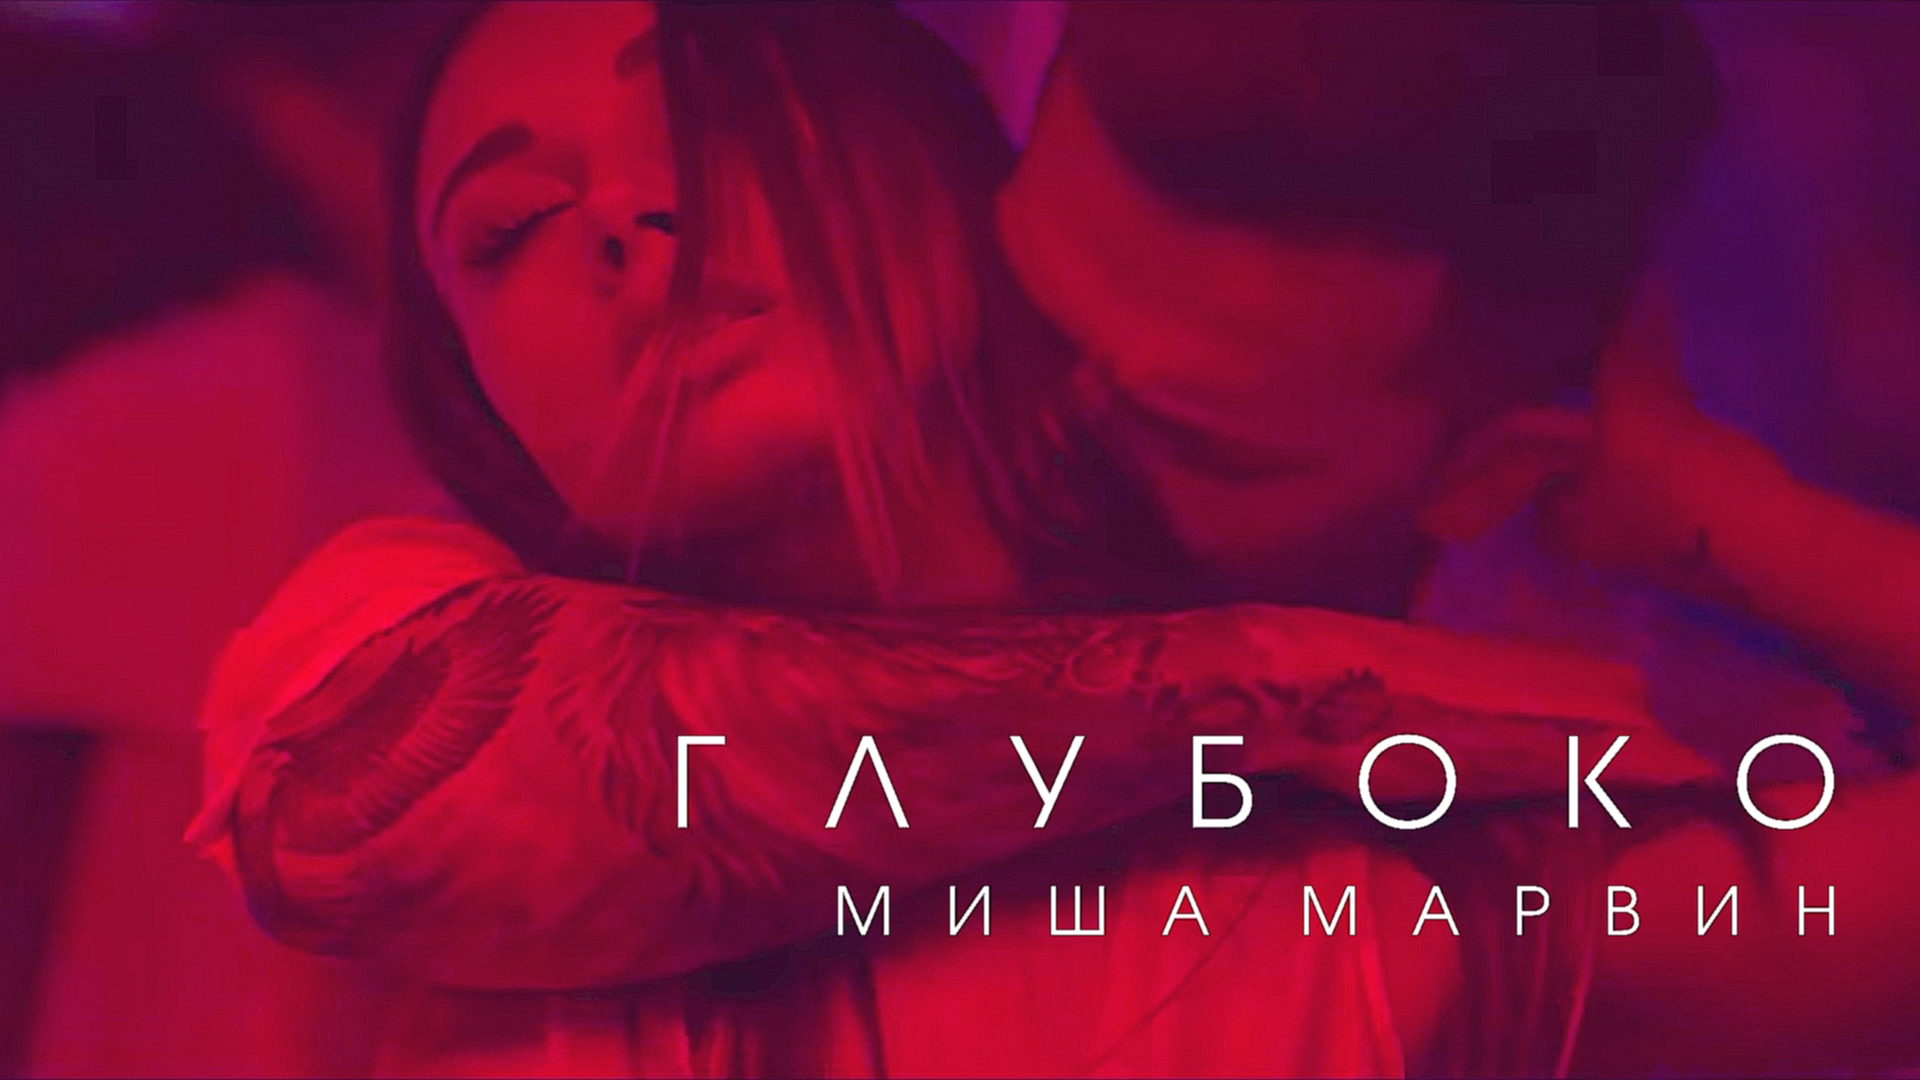 Миша Марвин - Глубоко (премьера клипа, 2017) 